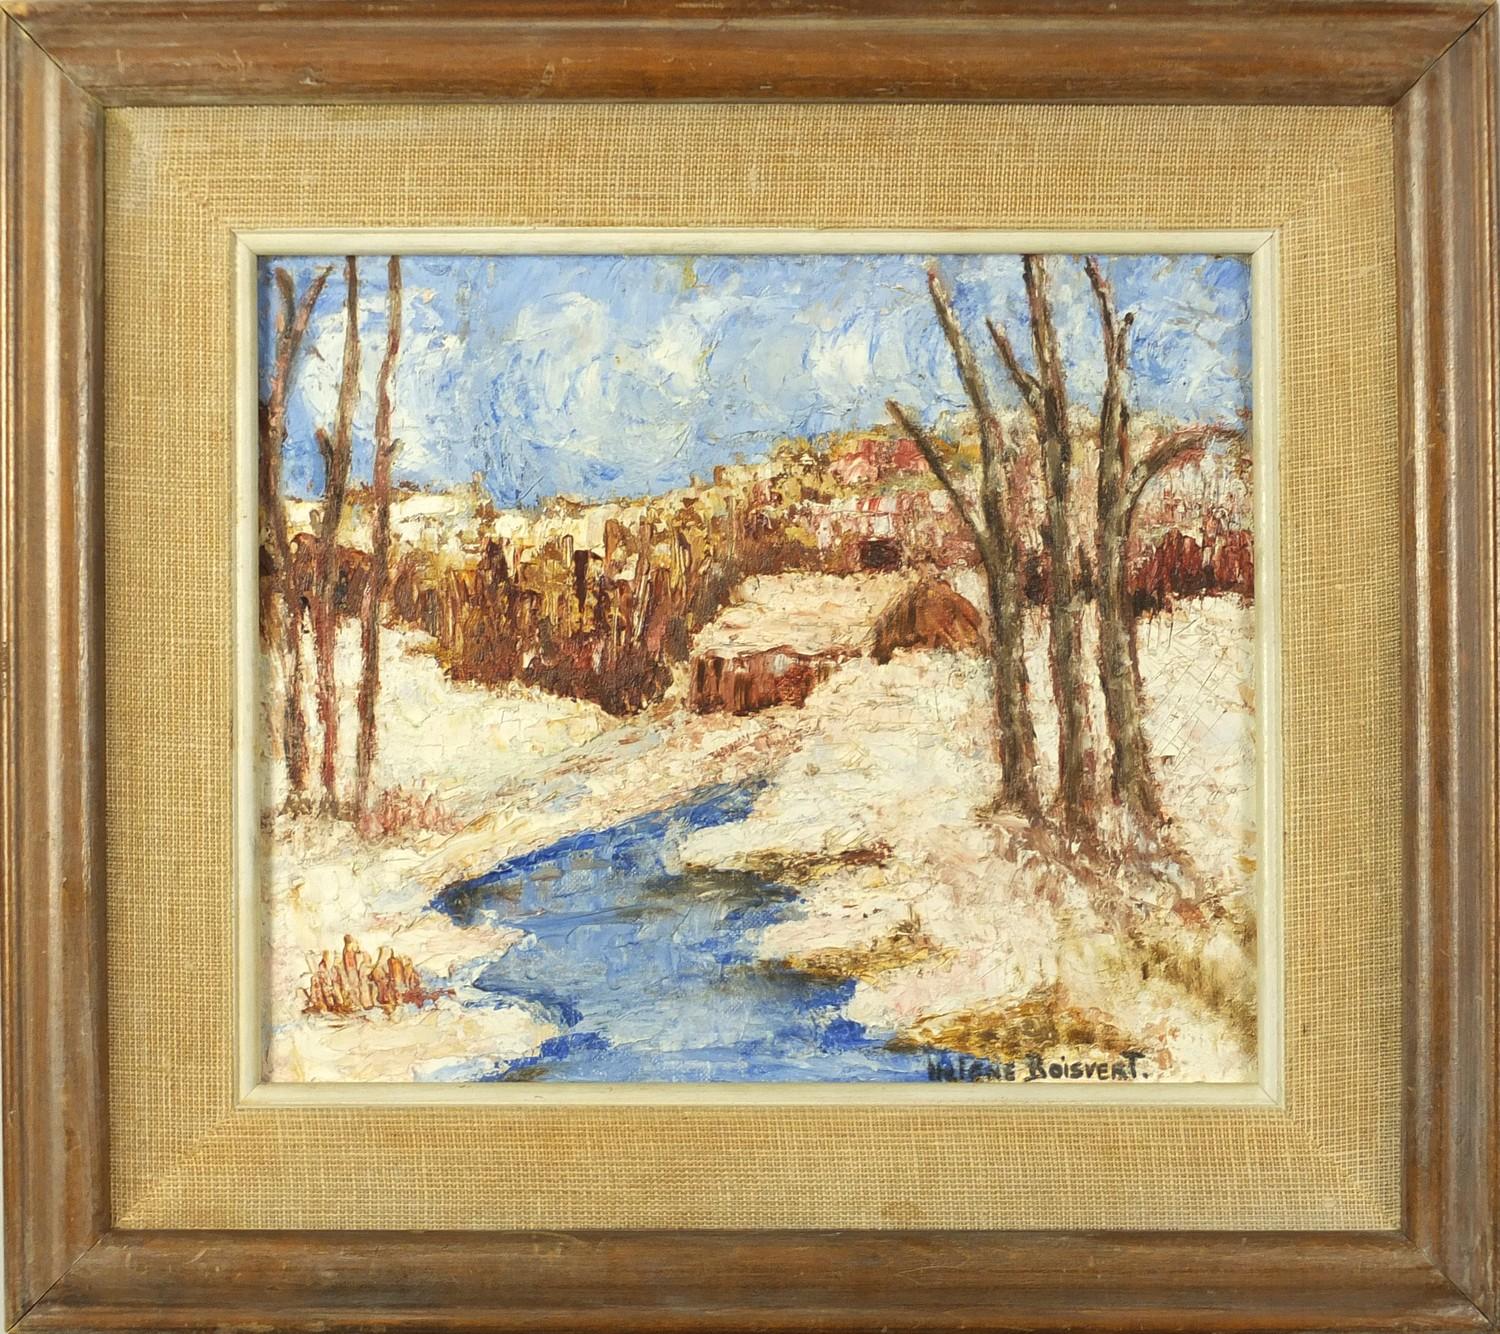 Helene Boisvert - Winter Landscape, oil impasto onto board, framed, 29cm x 24cm : For Further - Image 2 of 4